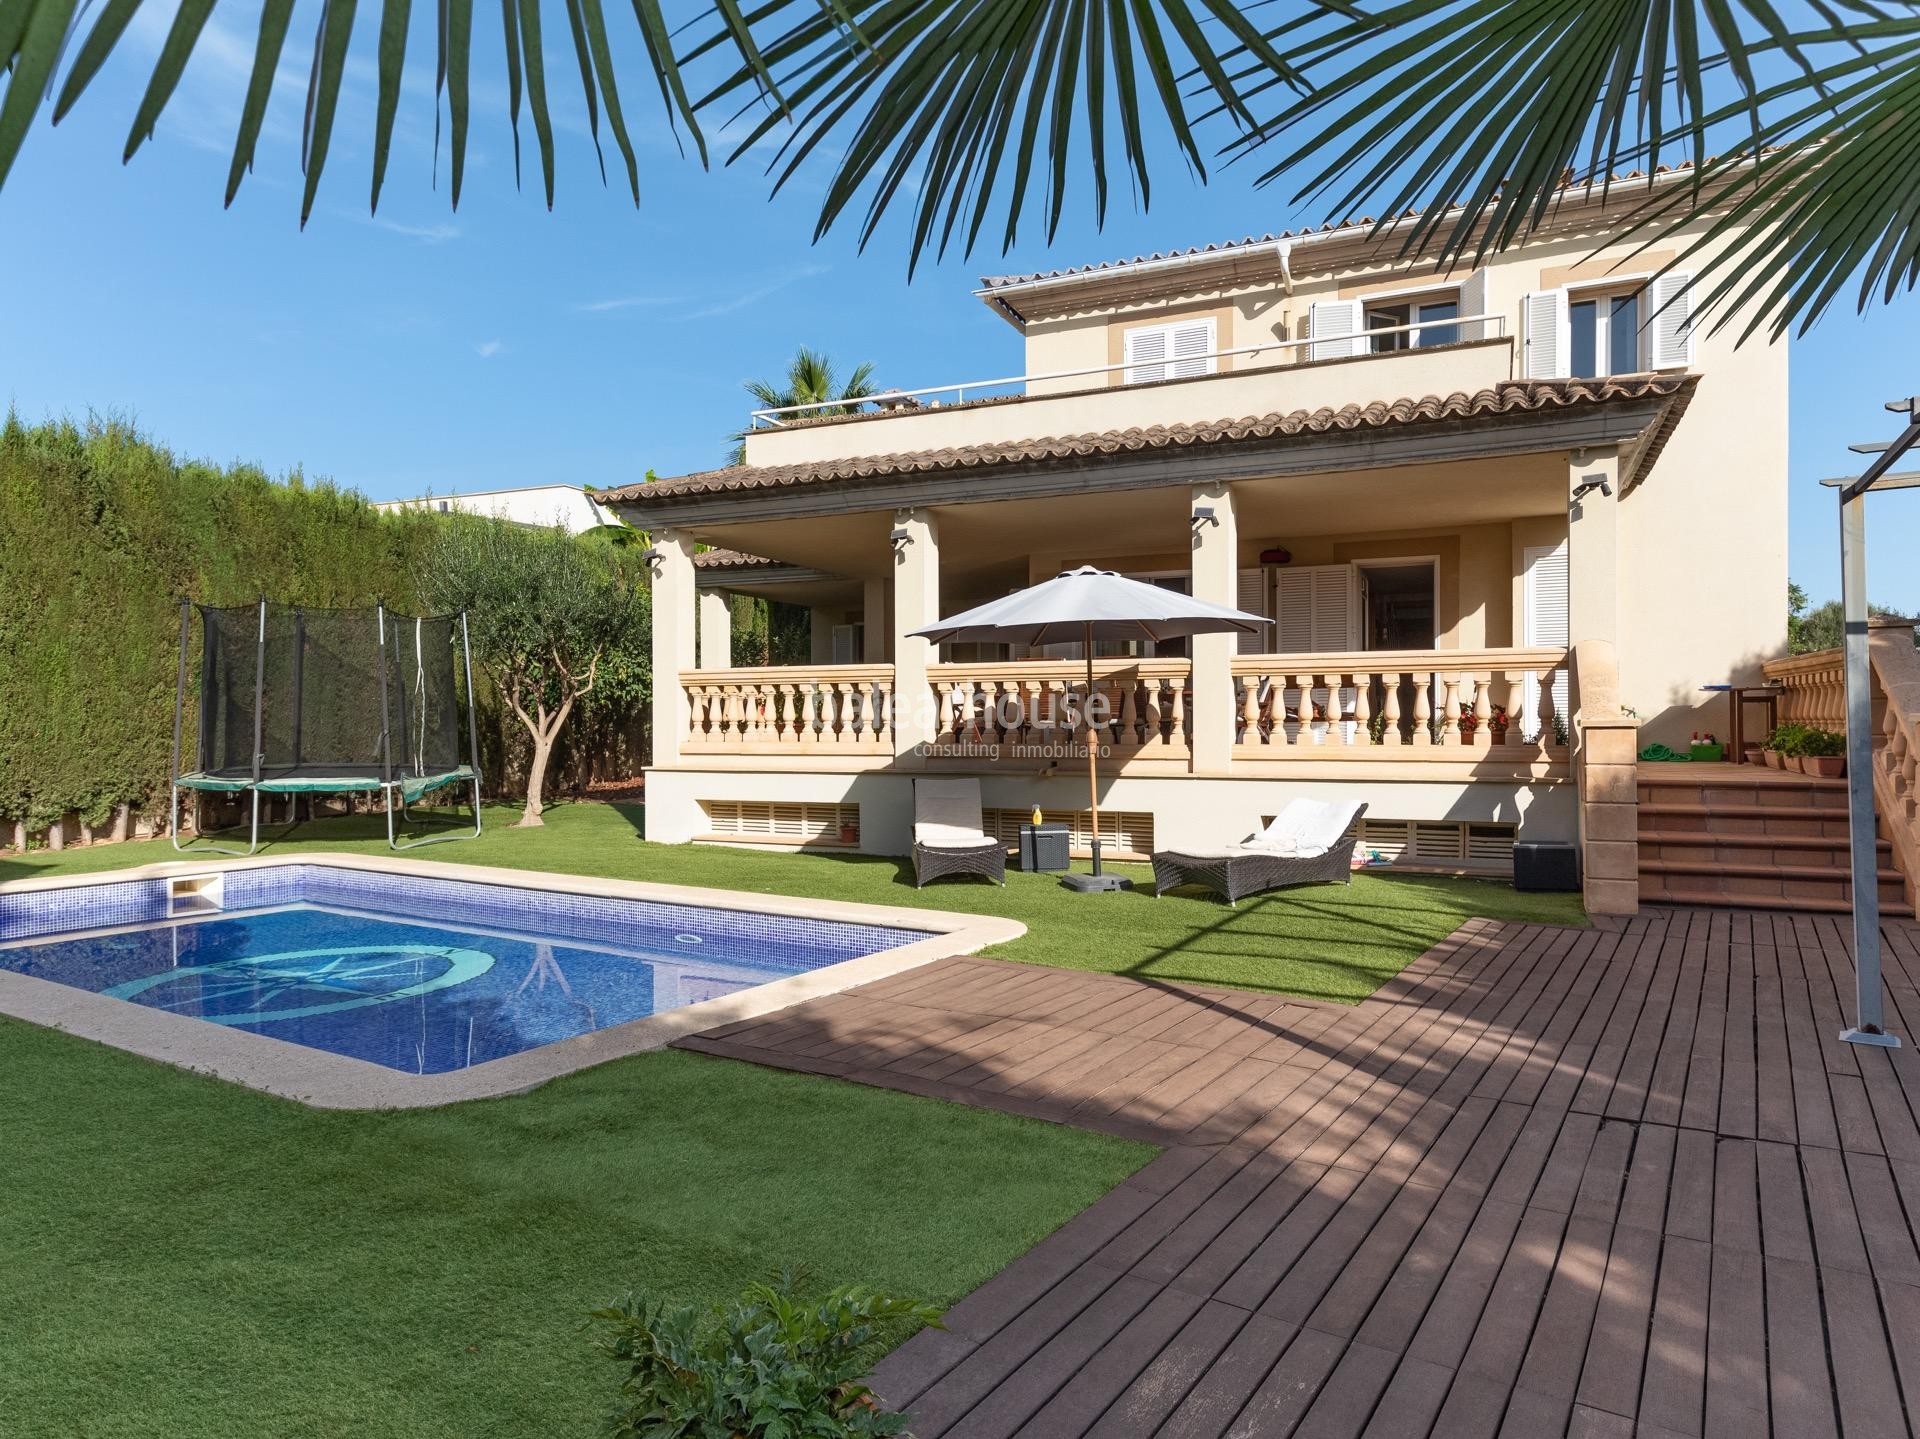 Excelente chalet con soleadas terrazas y piscina privada situado en una verde zona junto a Son Vida.